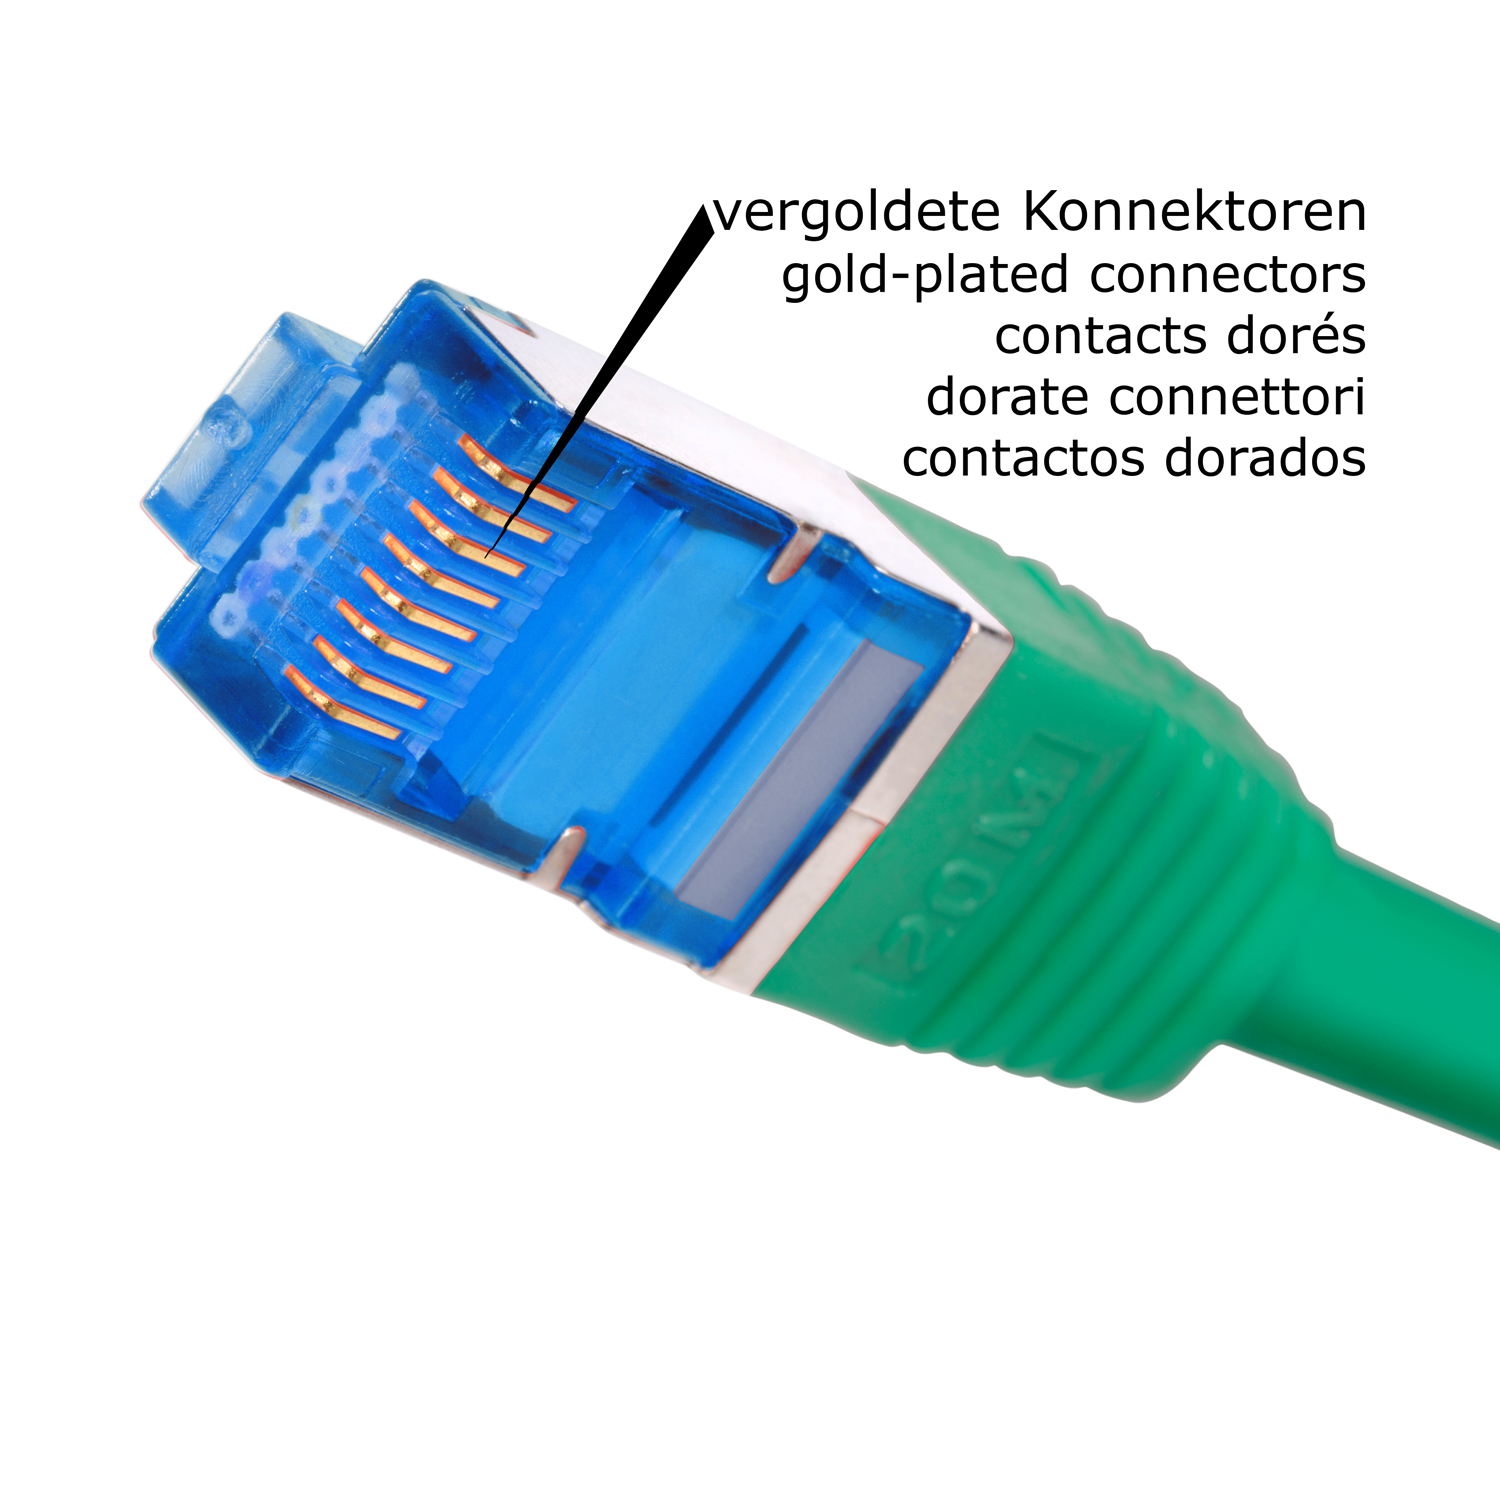 Netzwerkkabel 30m 30 S/FTP m Netzwerkkabel, grün, Patchkabel TPFNET 10GBit, /